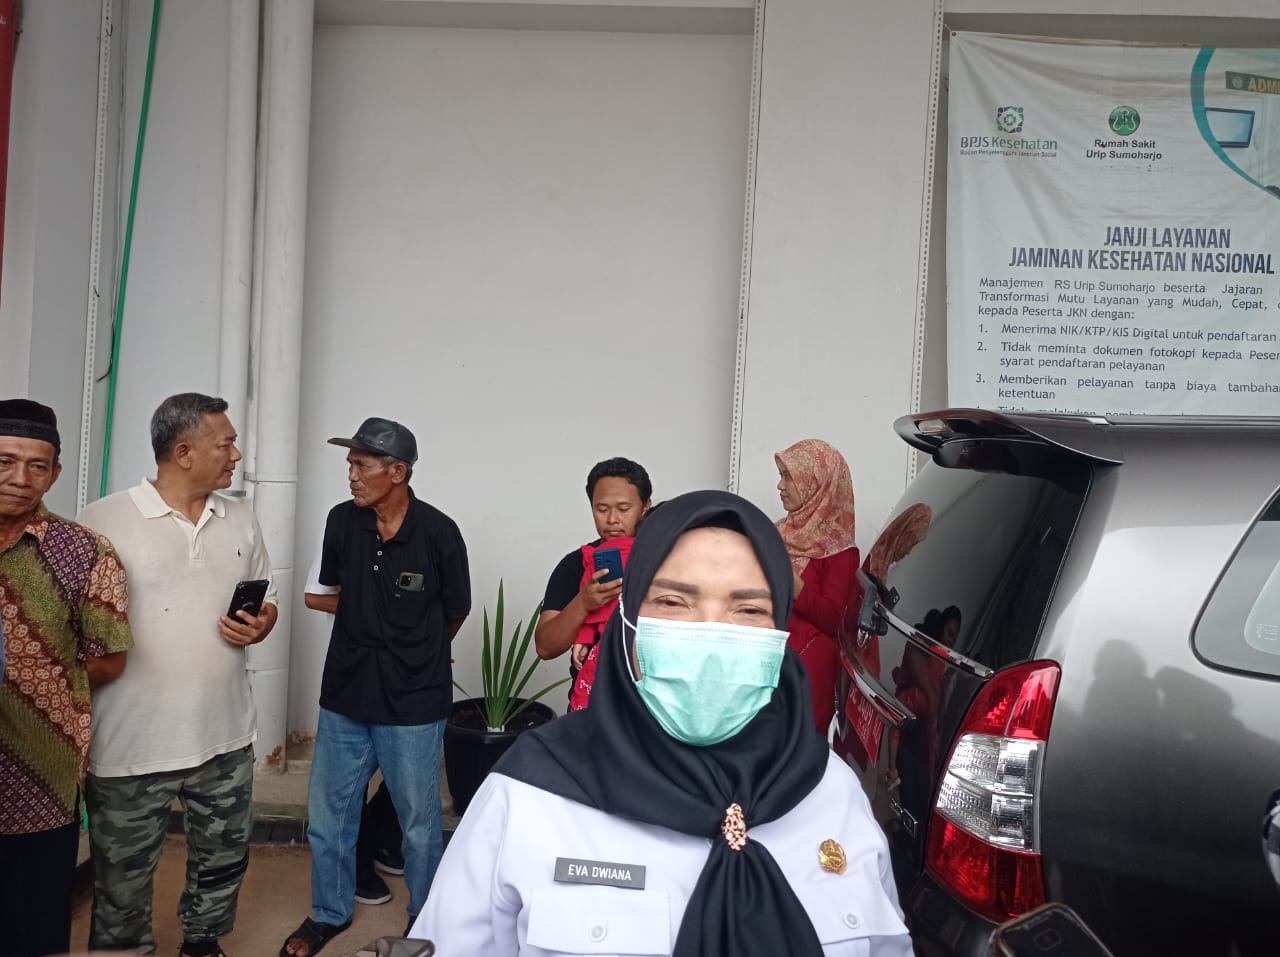 Eva Dwiana Sampaikan Harapan Untuk Pj Gubernur Lampung